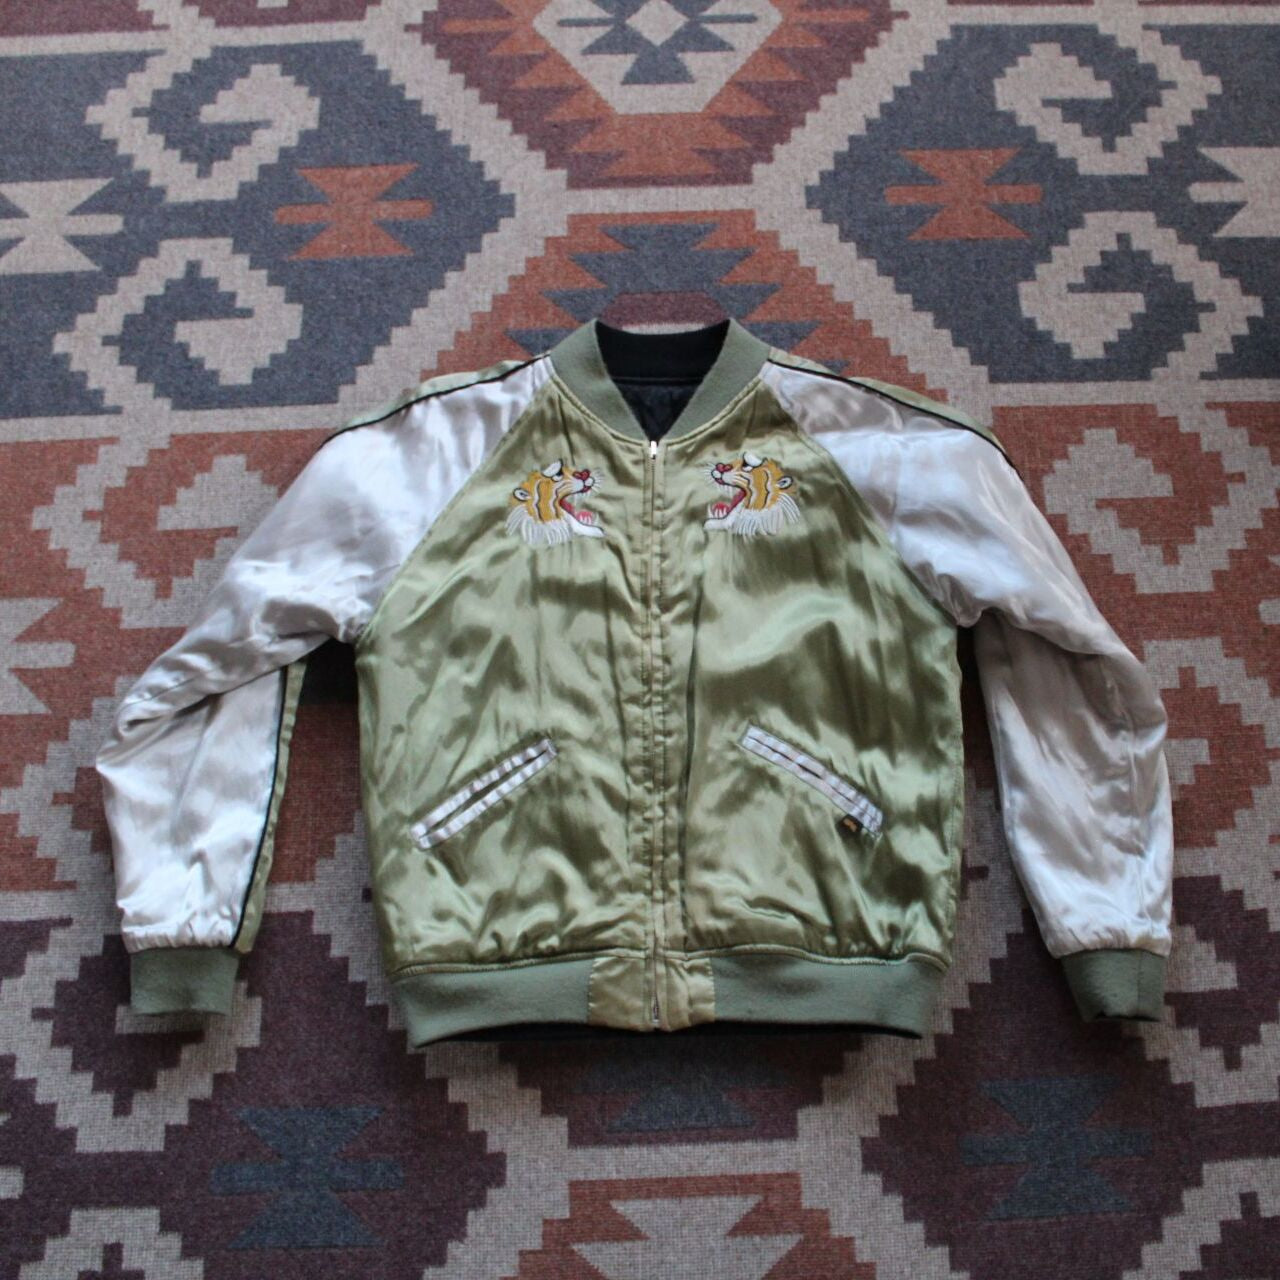 Souvenir Jacket